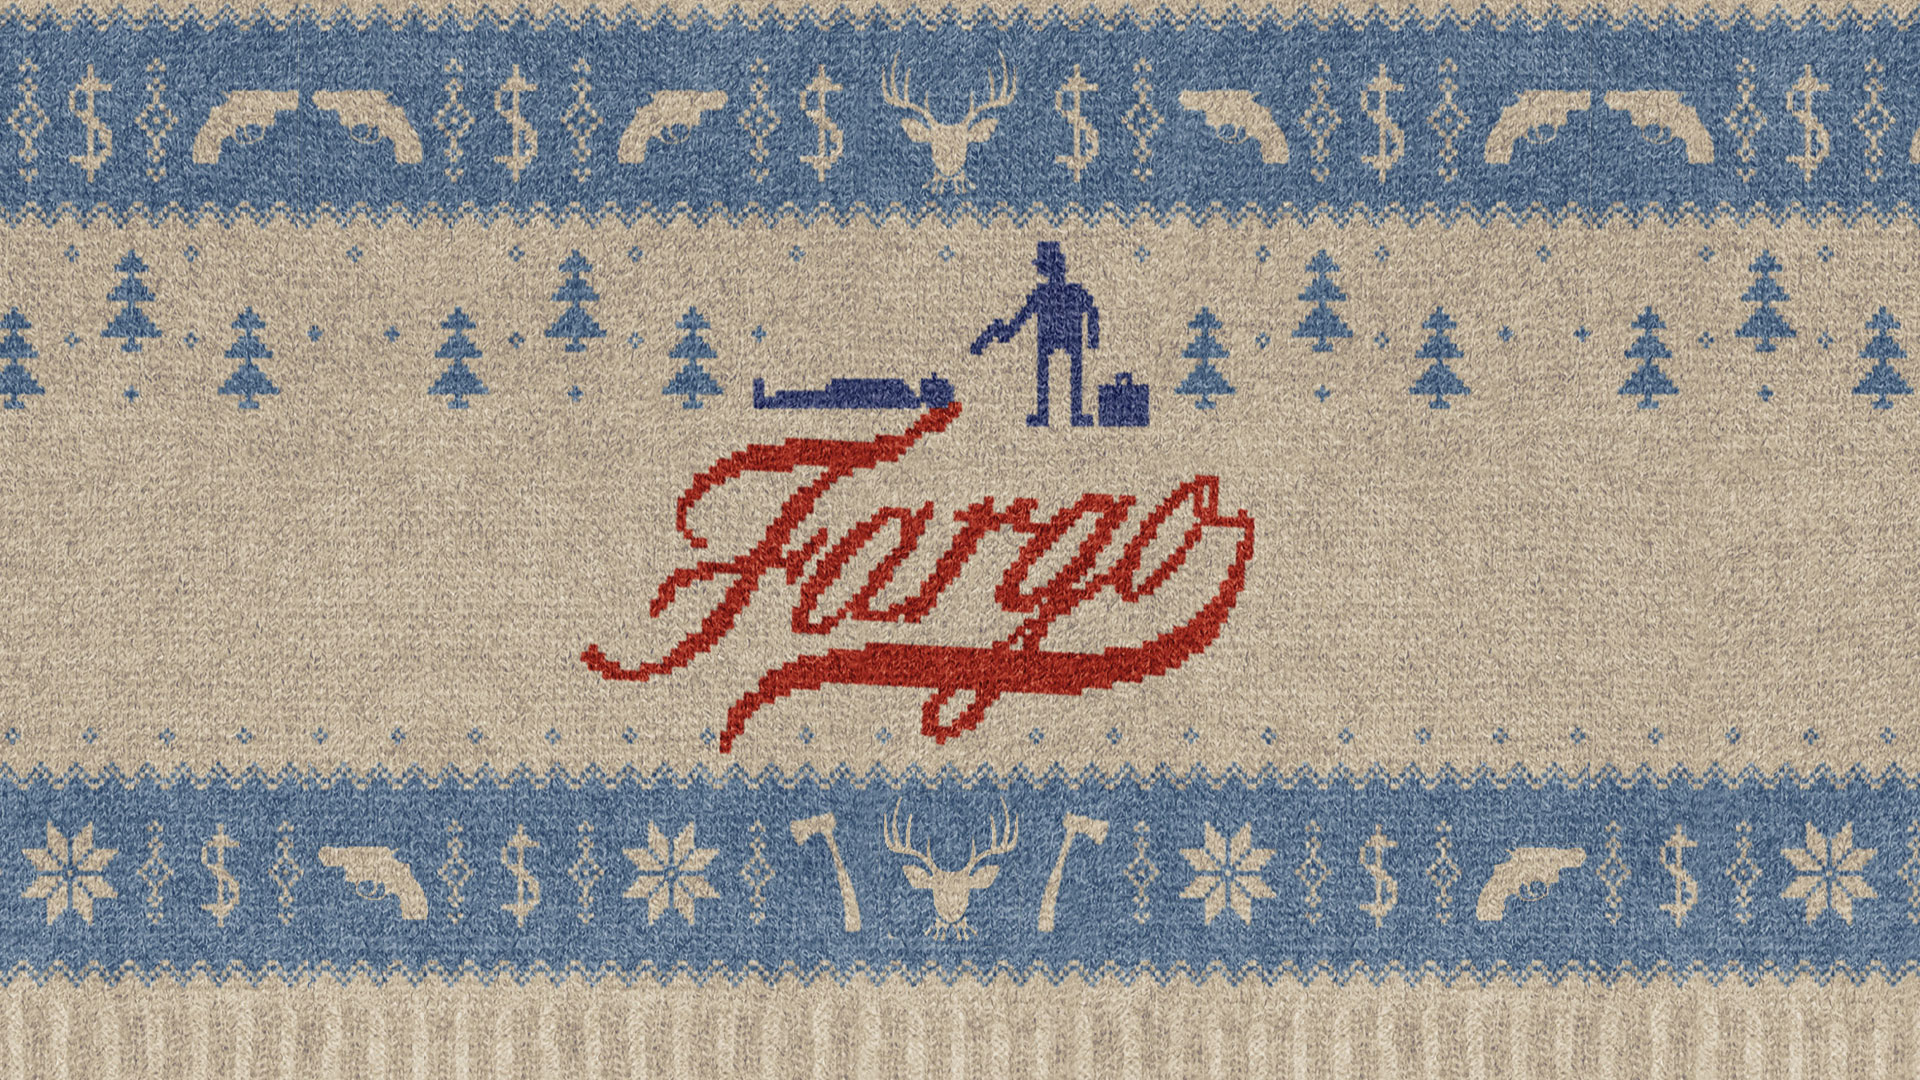 Fargo Fargo saison 2 : les premières images